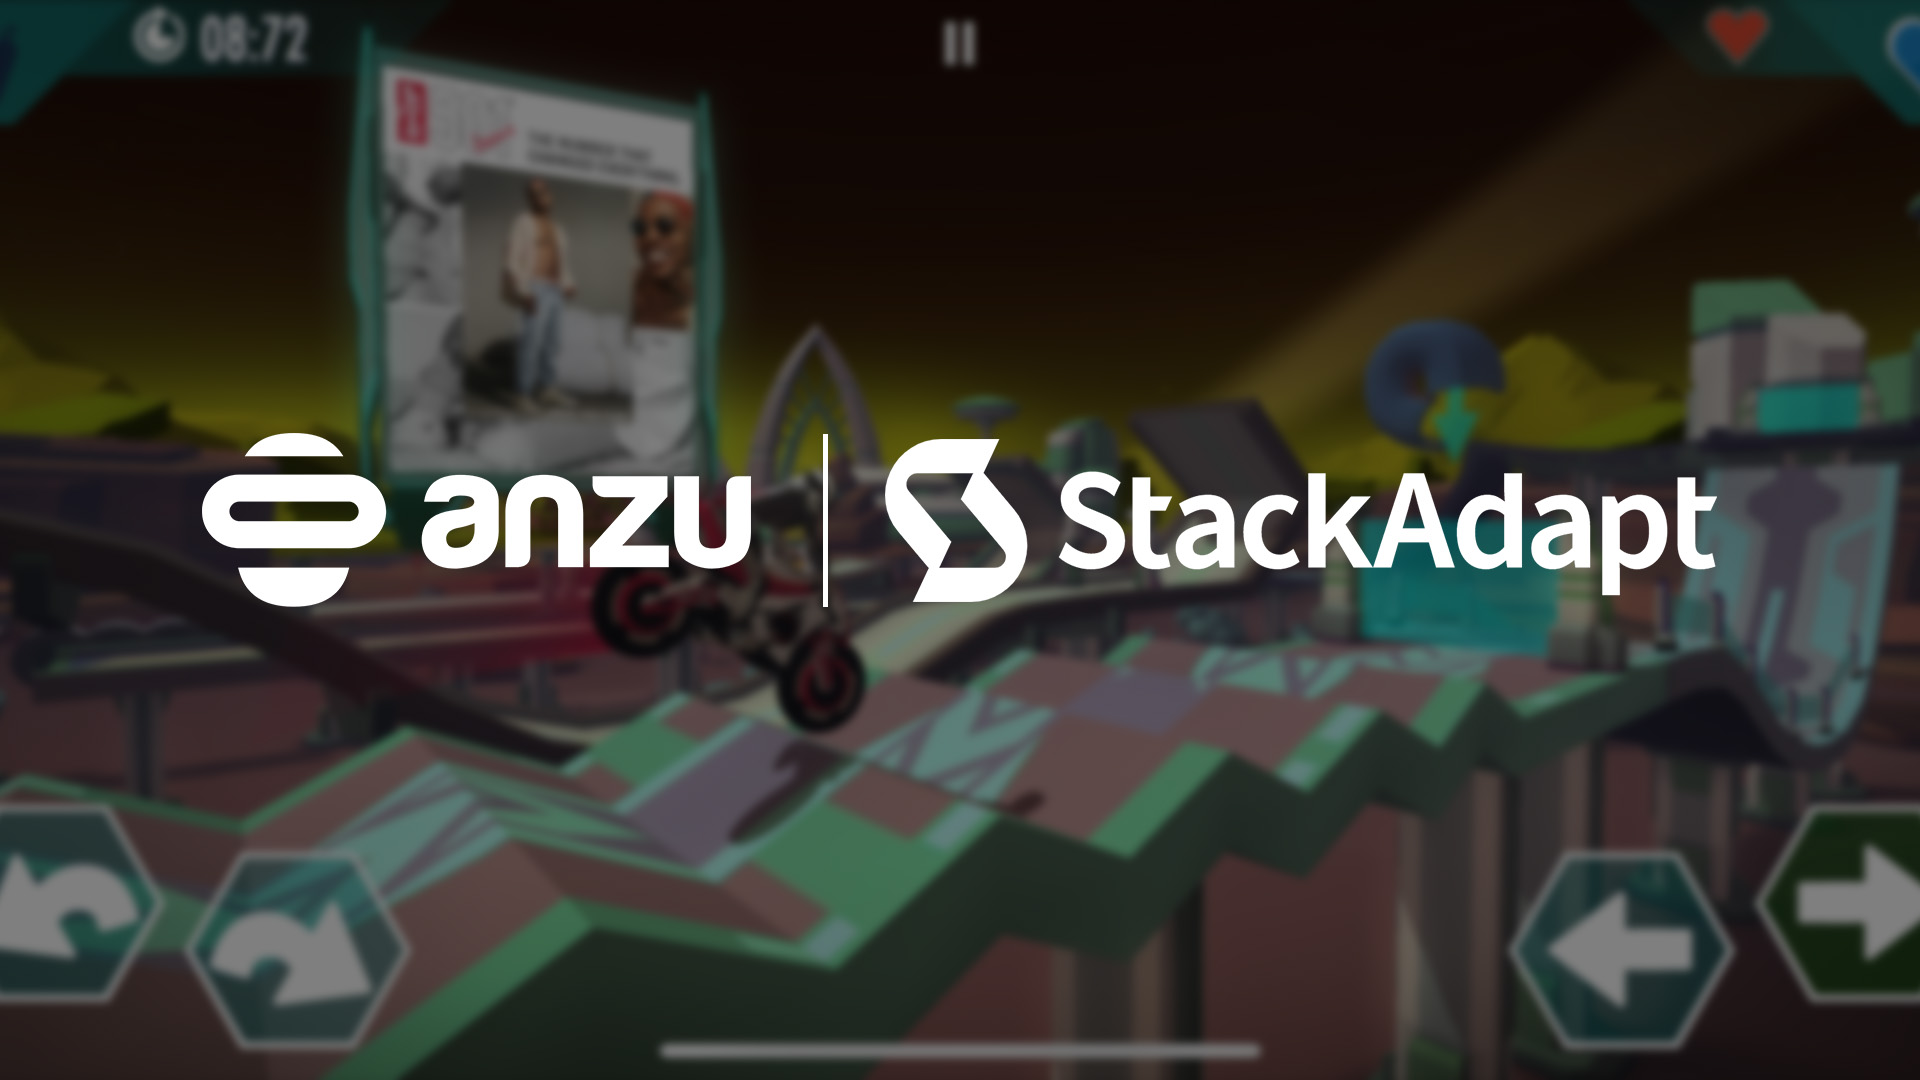 Anzu StackAdapt announcement banner